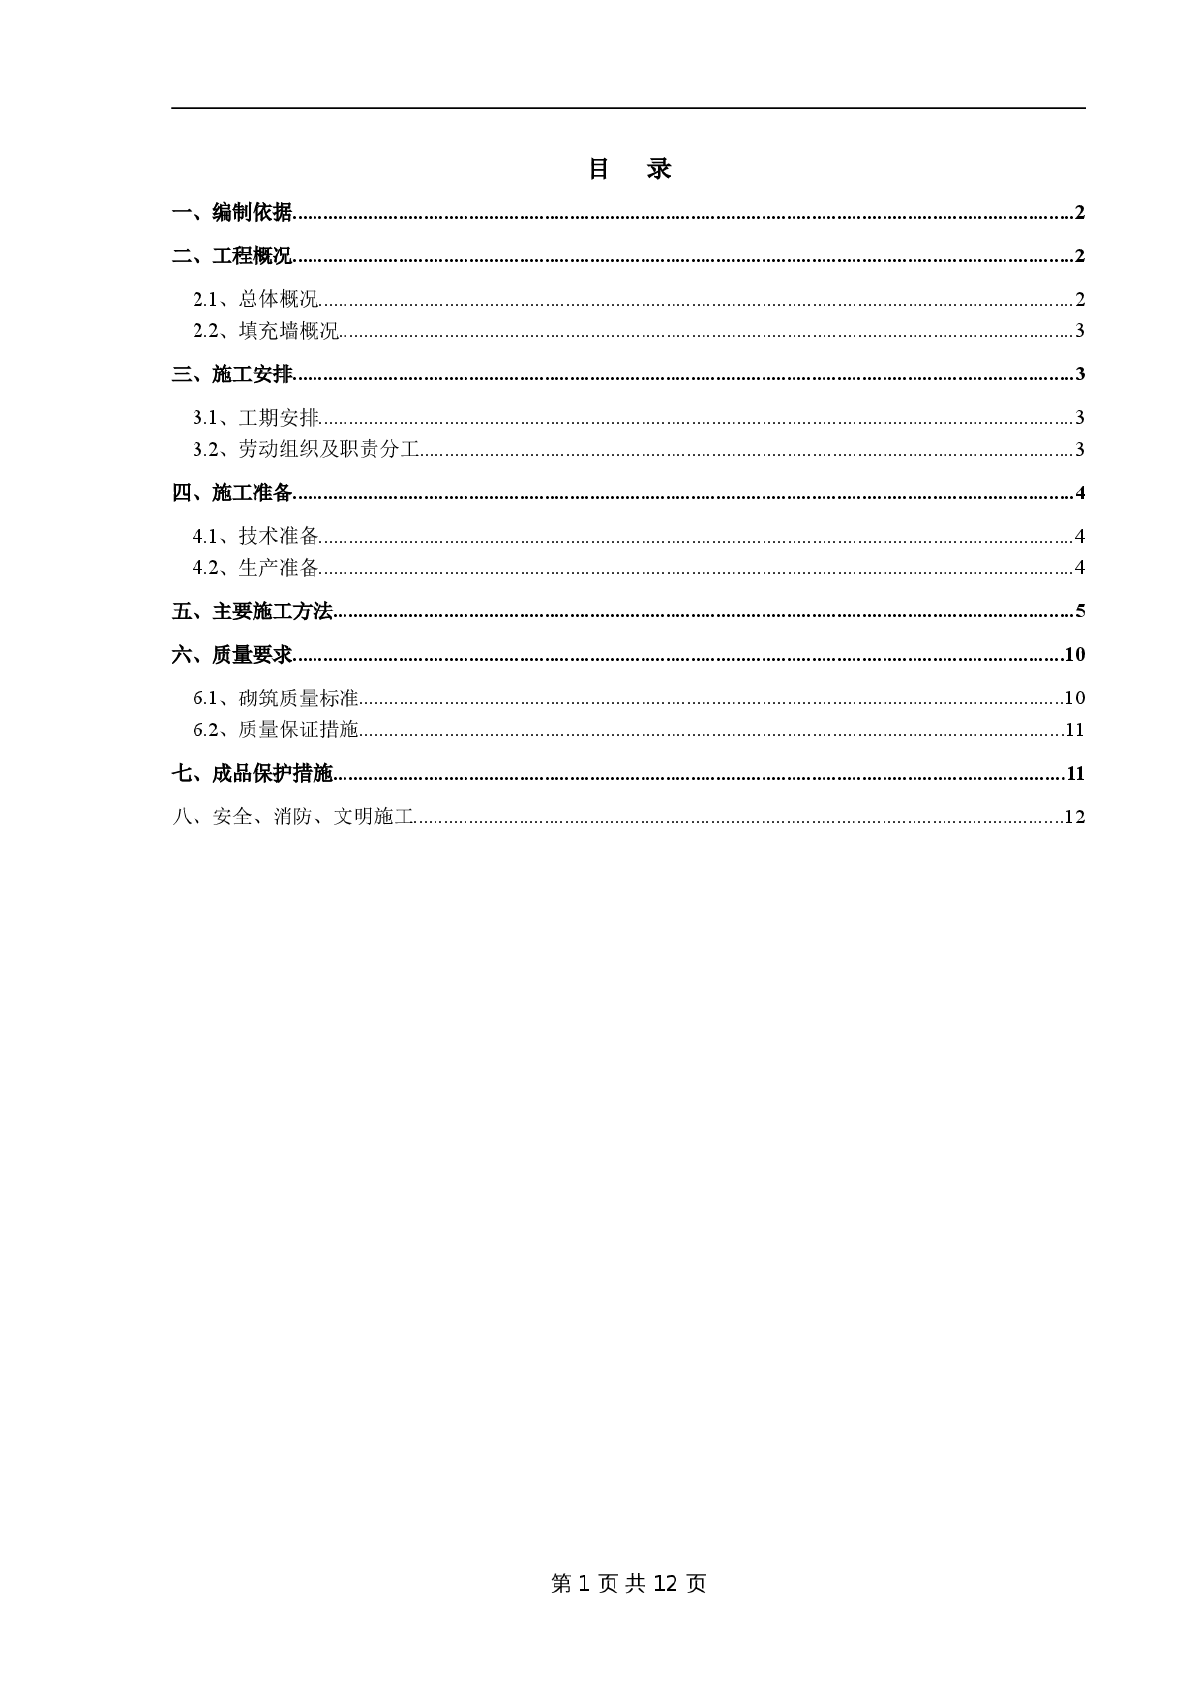  [Beijing] Comprehensive Office Building Secondary Structure Construction Scheme (Node Details) - Figure 2